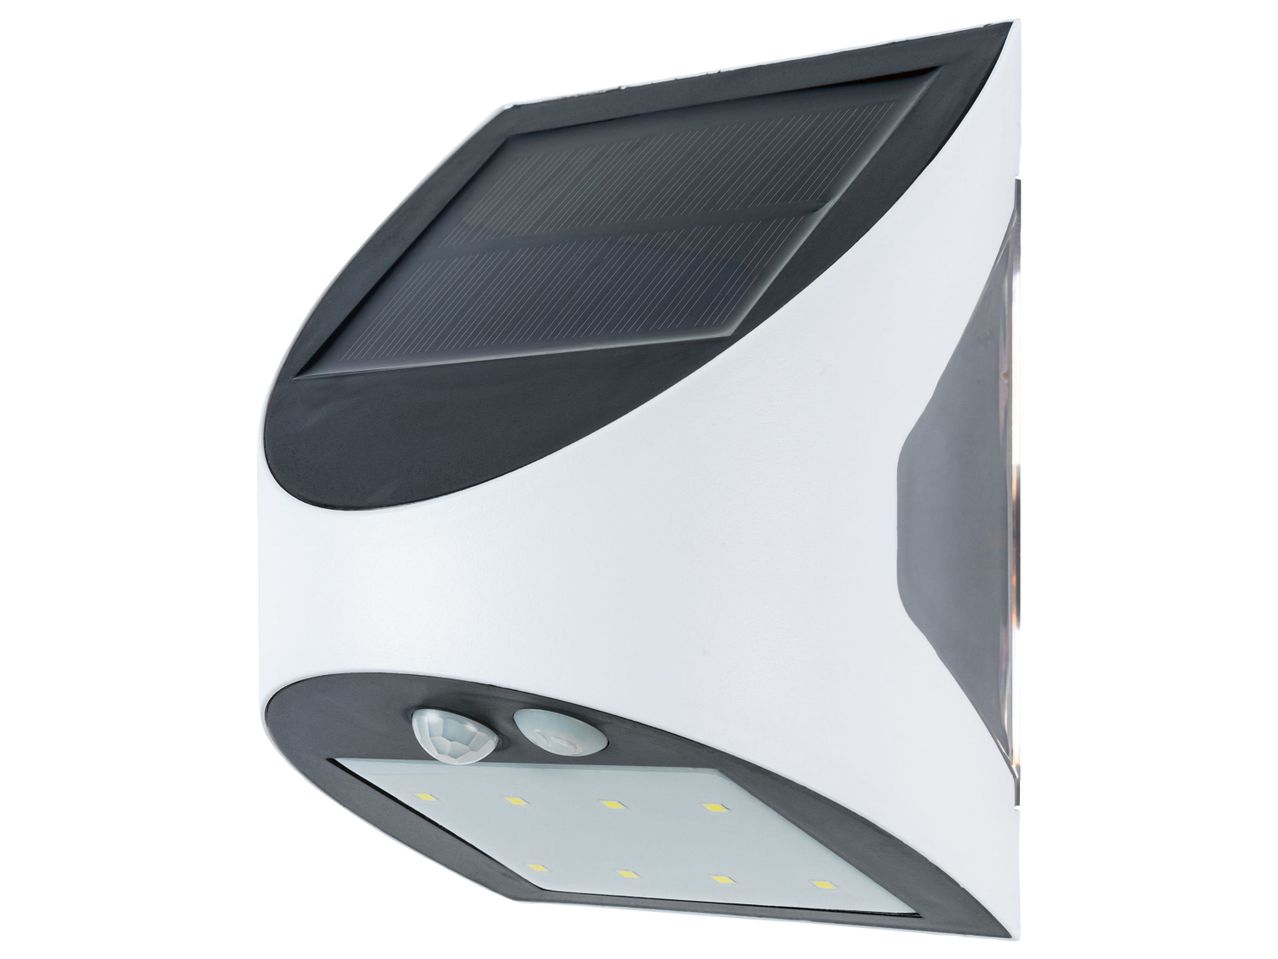 Lampada LED ad energia solare con rilevatore , prezzo 7.99 EUR 
Lampada LED ad energia ...